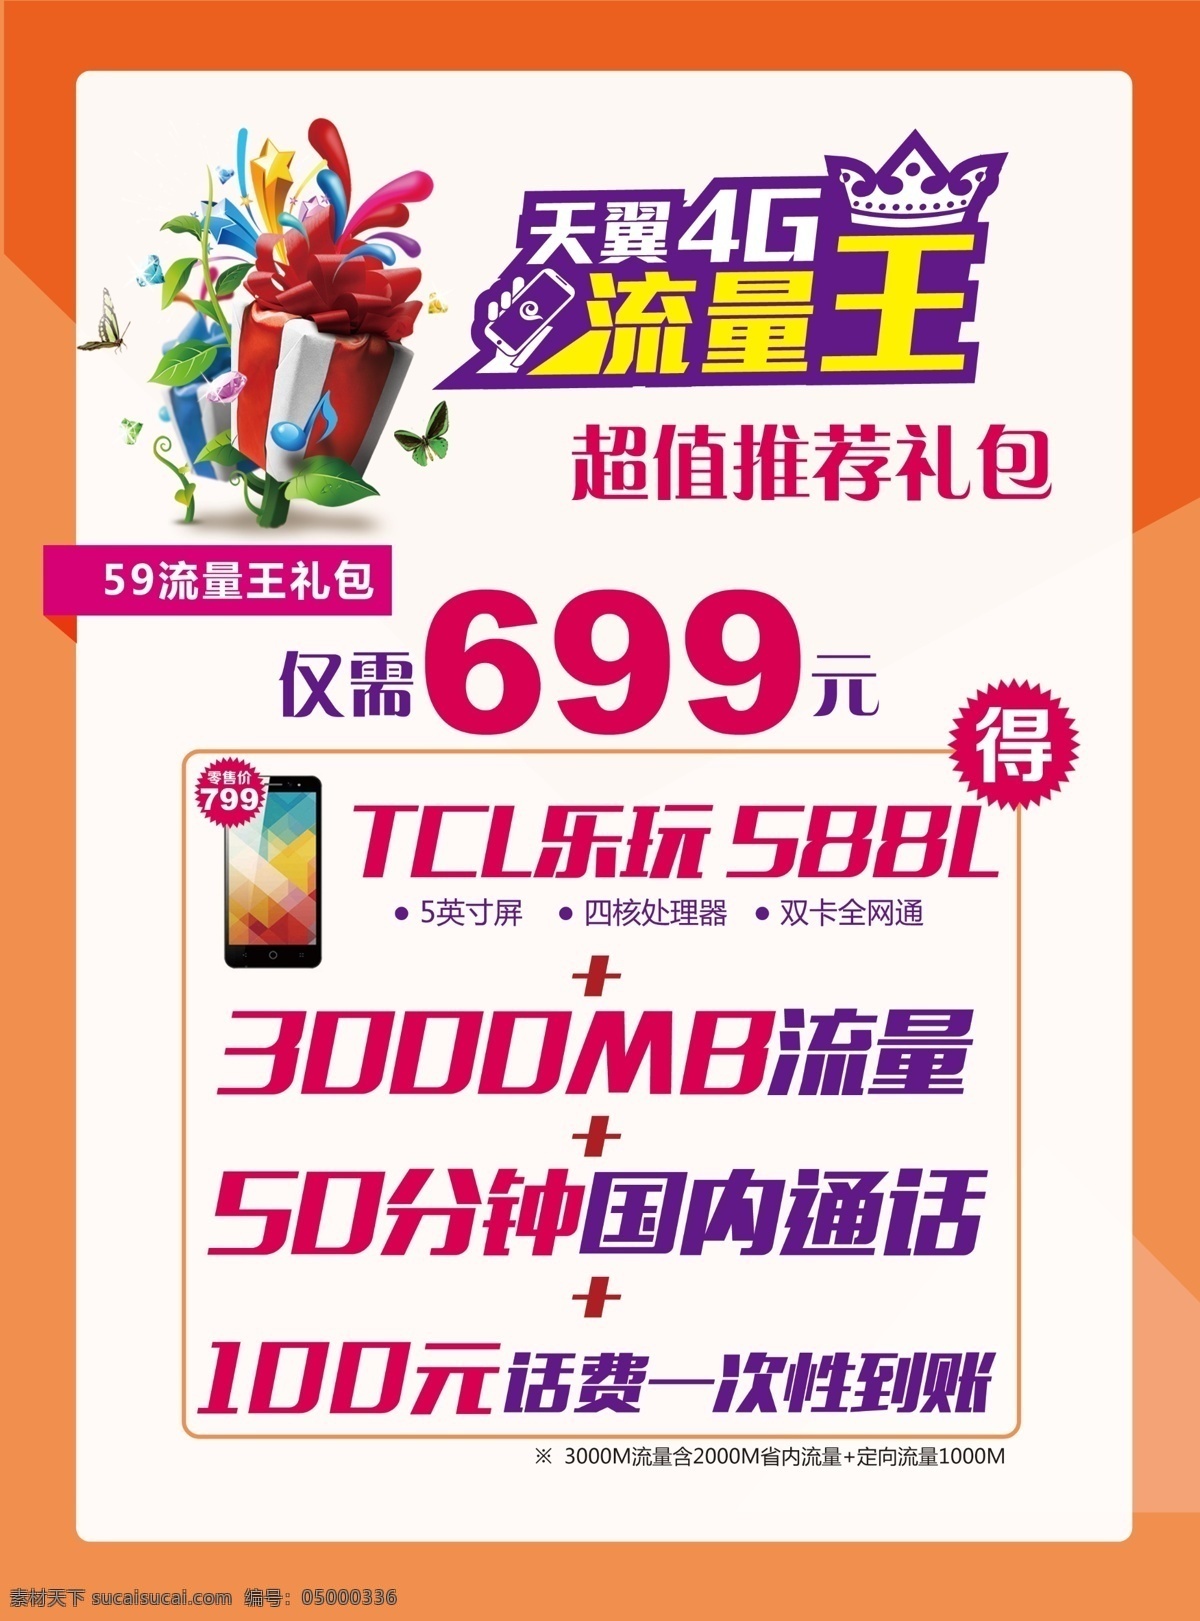 流量王 流量 礼物 手机 天翼4g 中国电信 橙色背景 分层 展架 海报 喷绘 dm宣传单